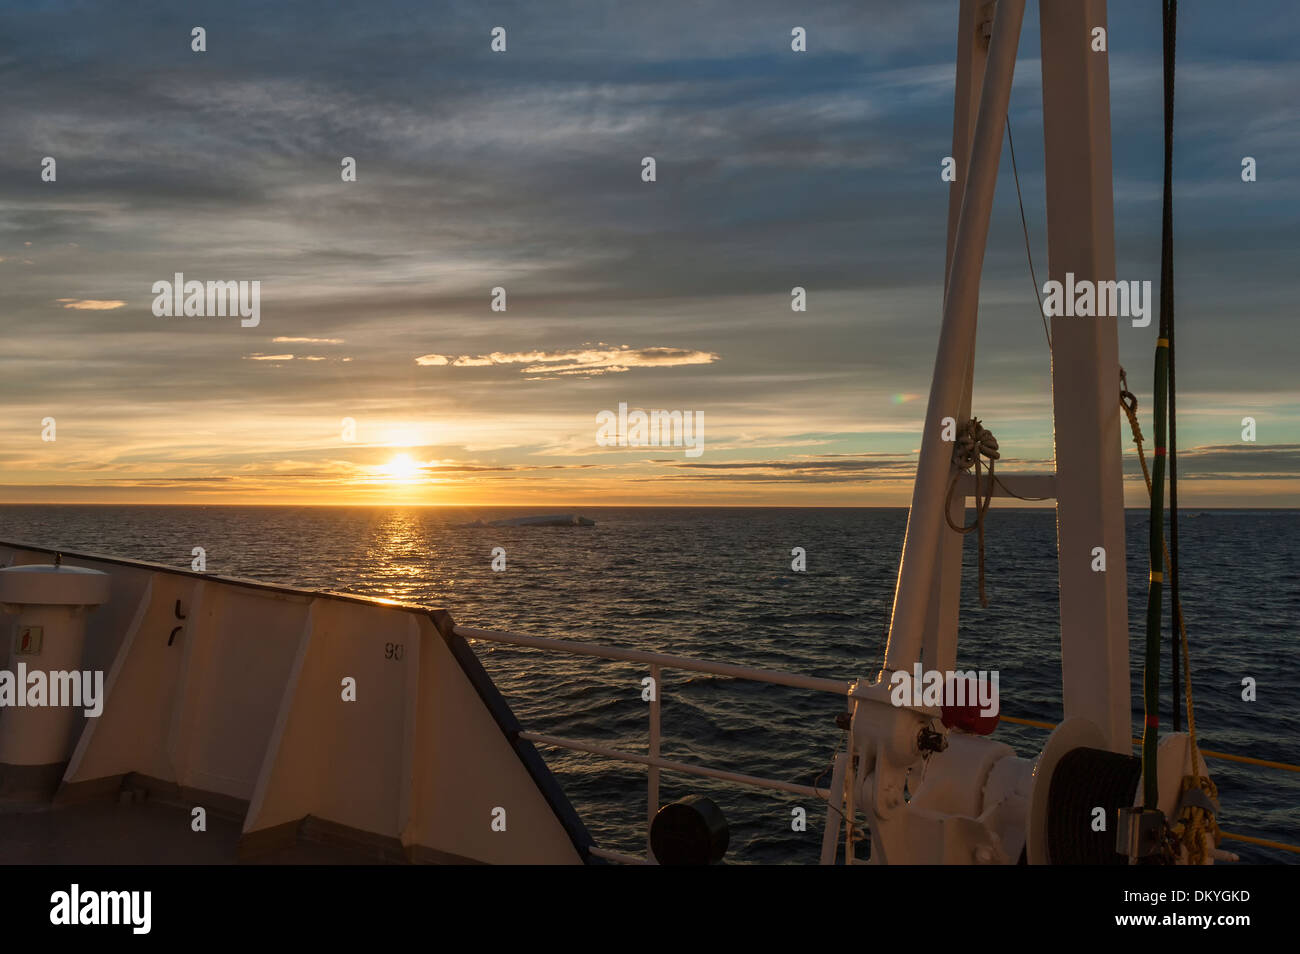 Bateau naviguant sur le soir, la lumière de la mer de Chukchi, Extrême-Orient russe Banque D'Images